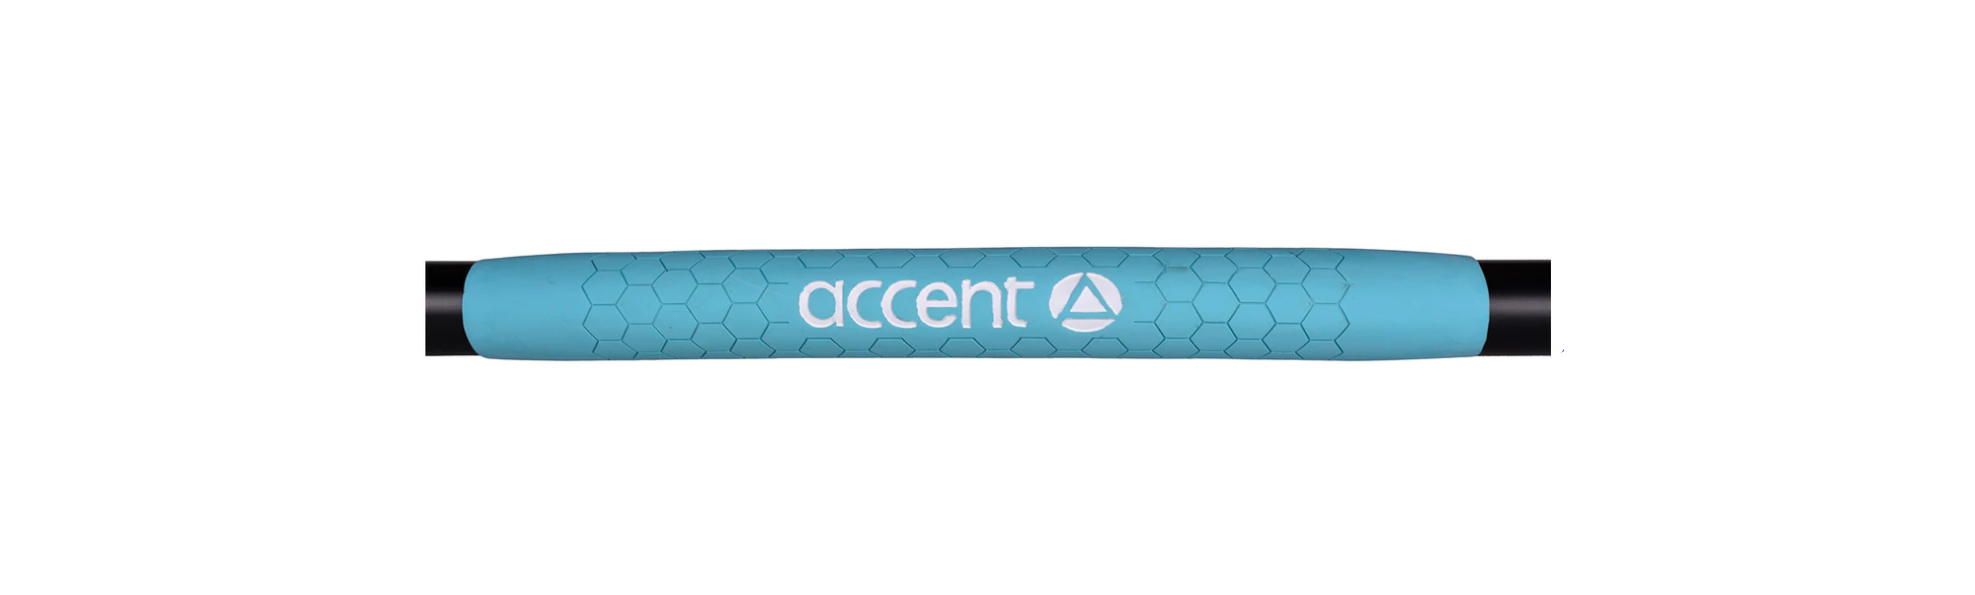 Accent Accent Advantage Hybrid Sup Paddle 3 Piece